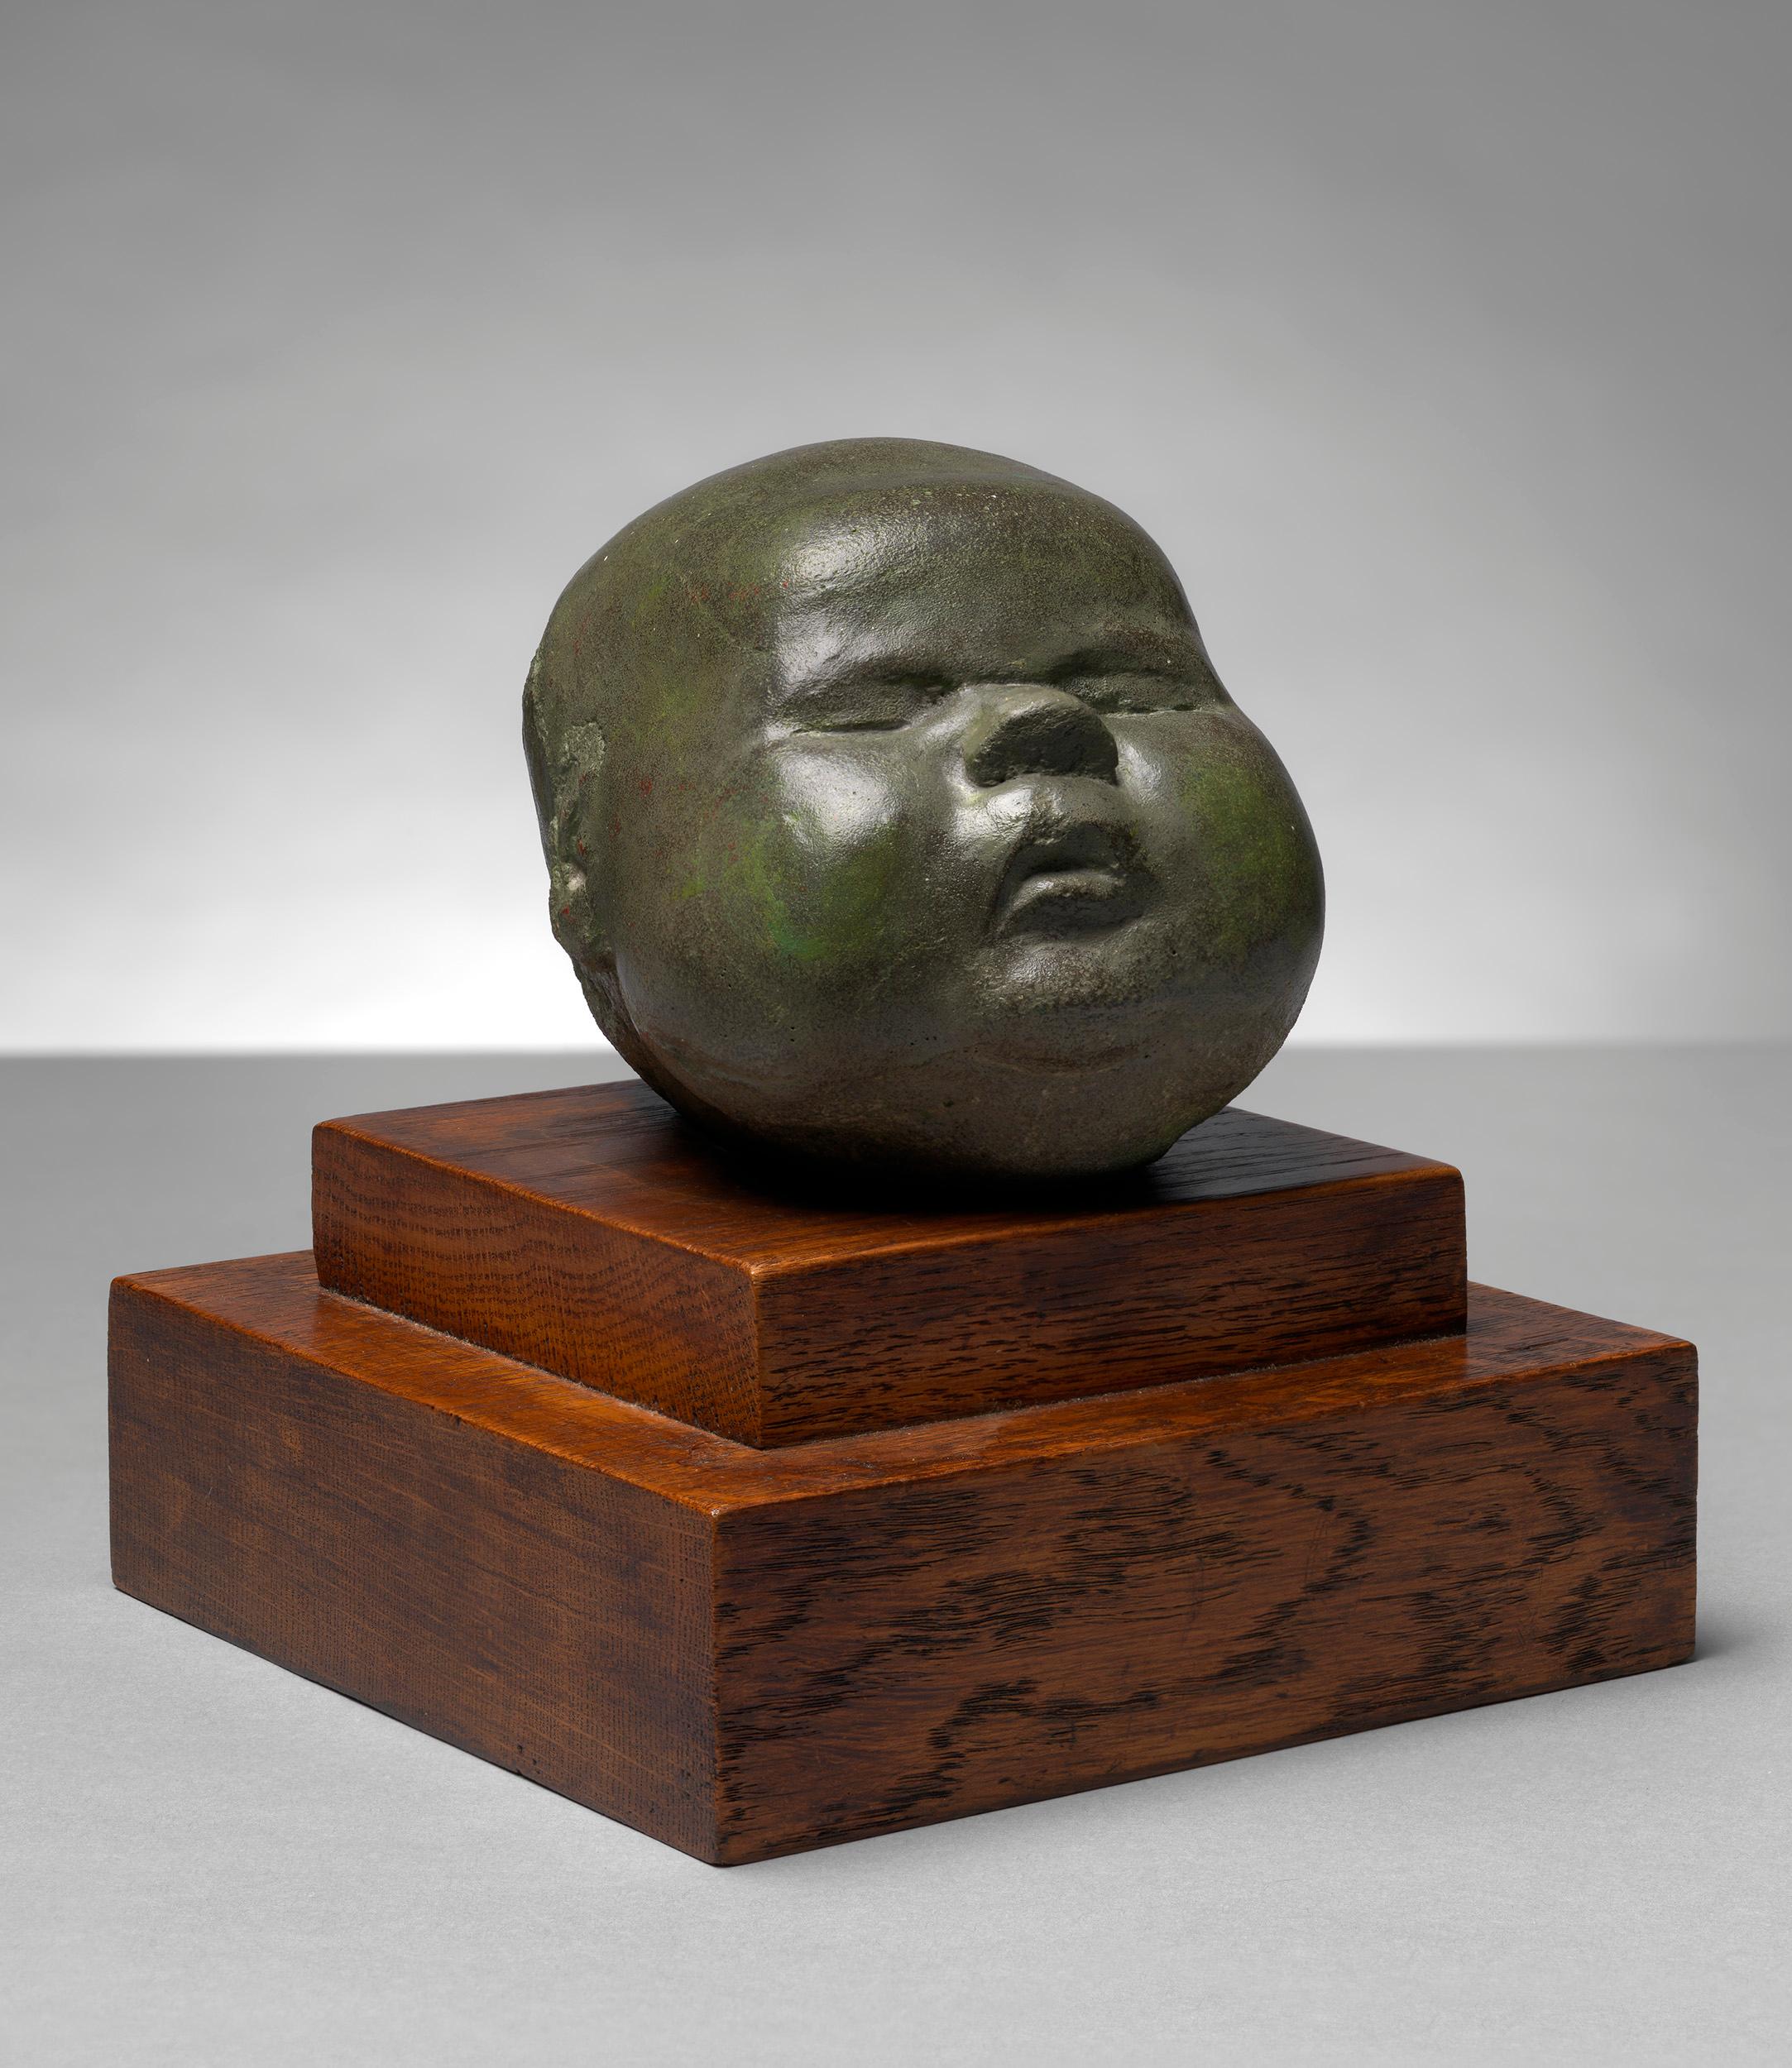 Baby's Head - 20th Century, Unique cast concrete sculpture by Henry Moore